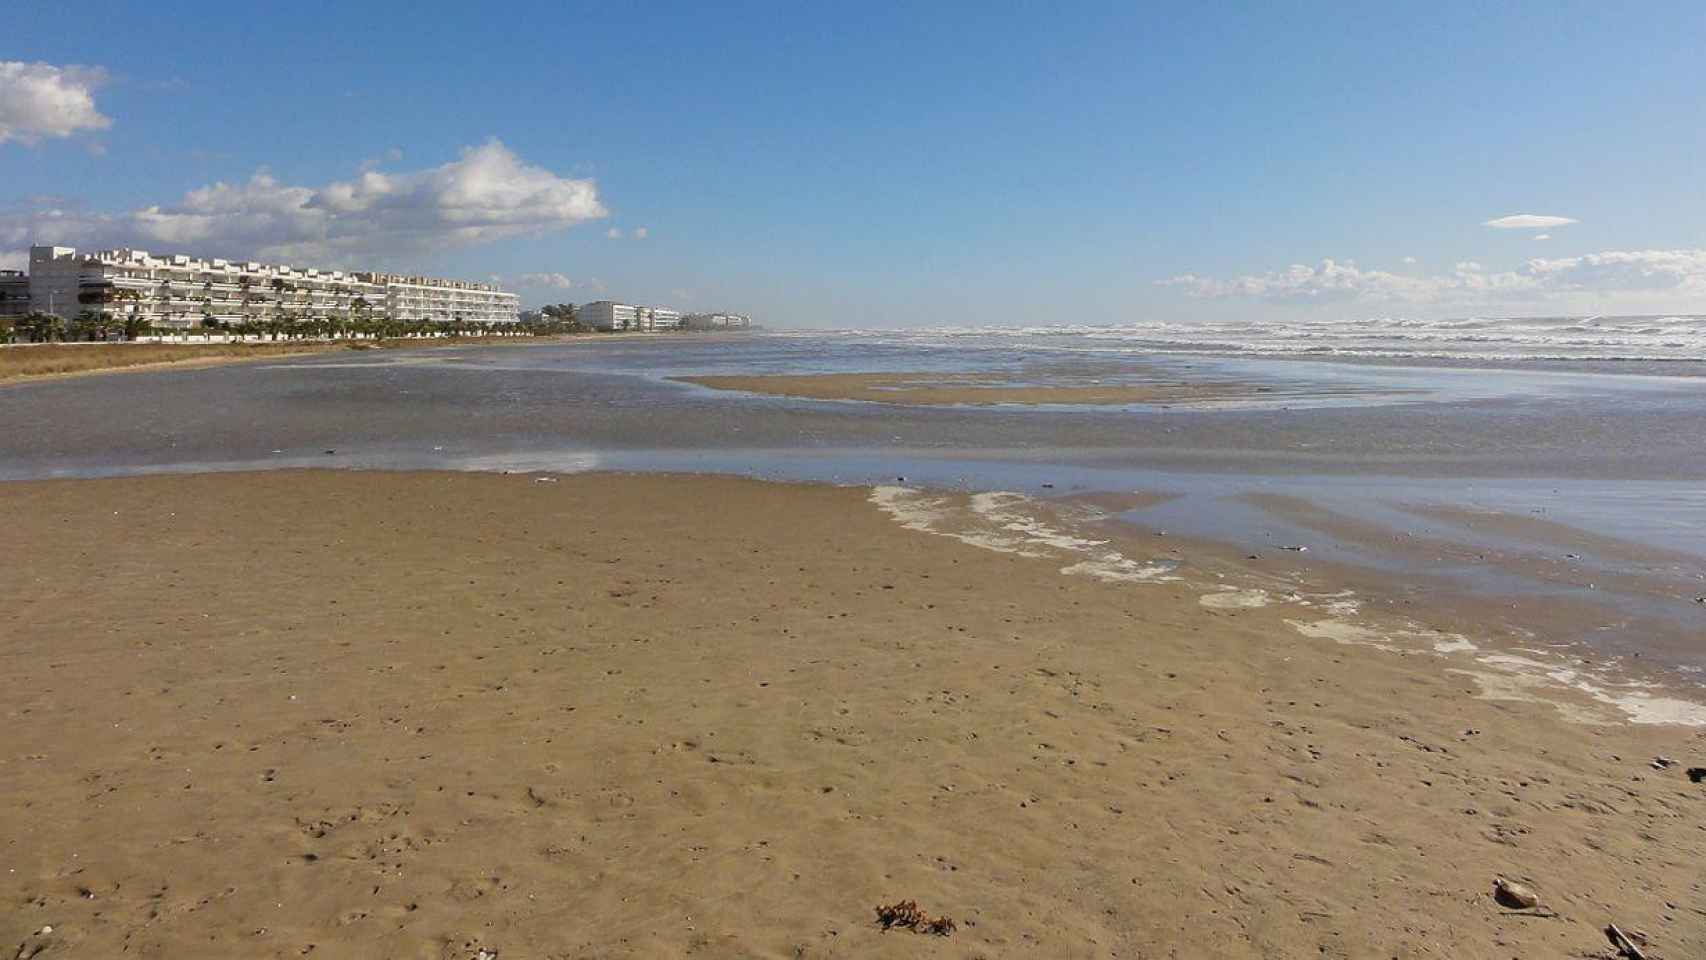 Imagen de la playa de de la Mota de Sant Pere de Cubelles / ISIDRO JABATO